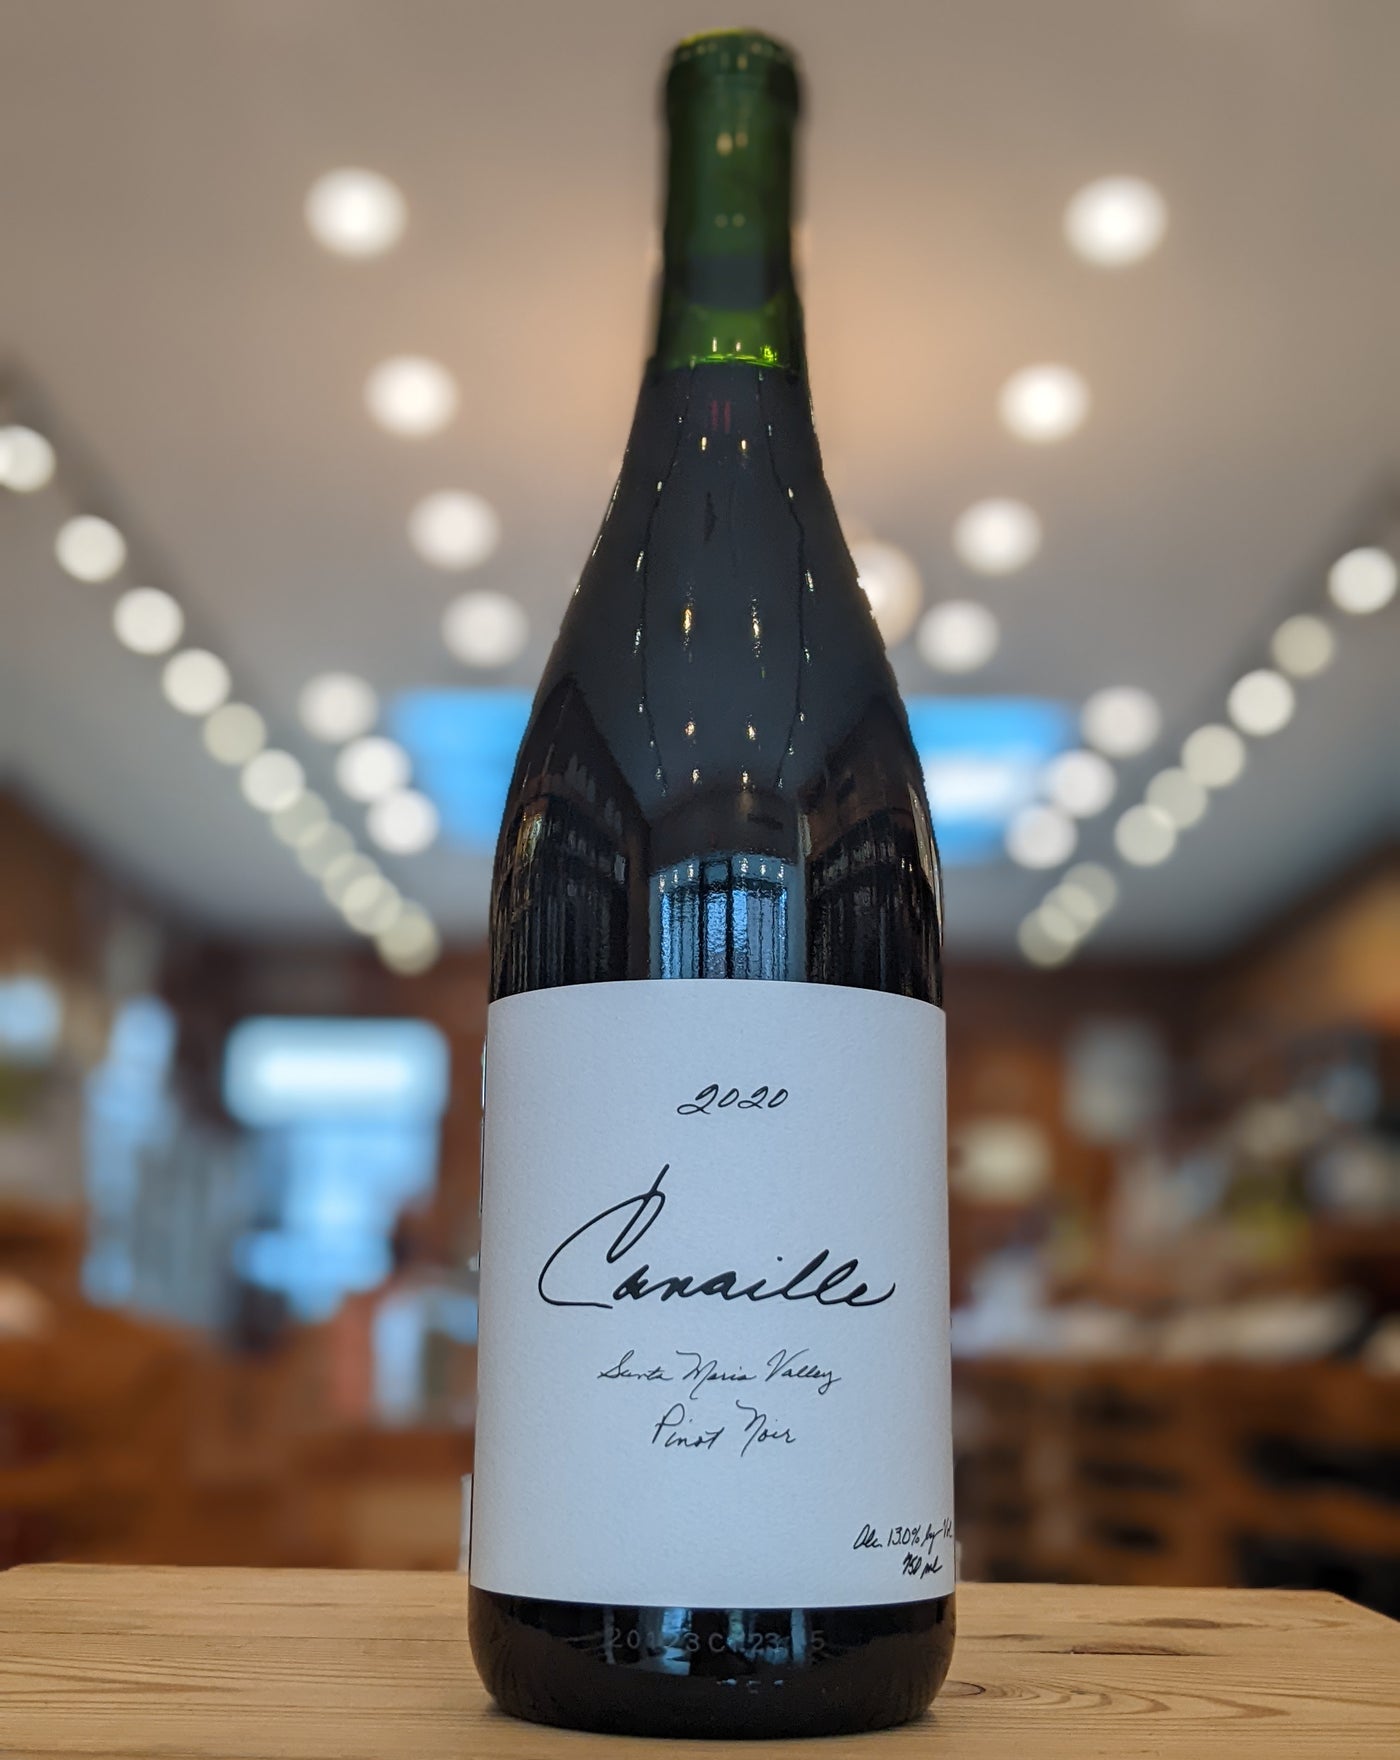 Canaille Santa Maria Valley Pinot Noir 2020